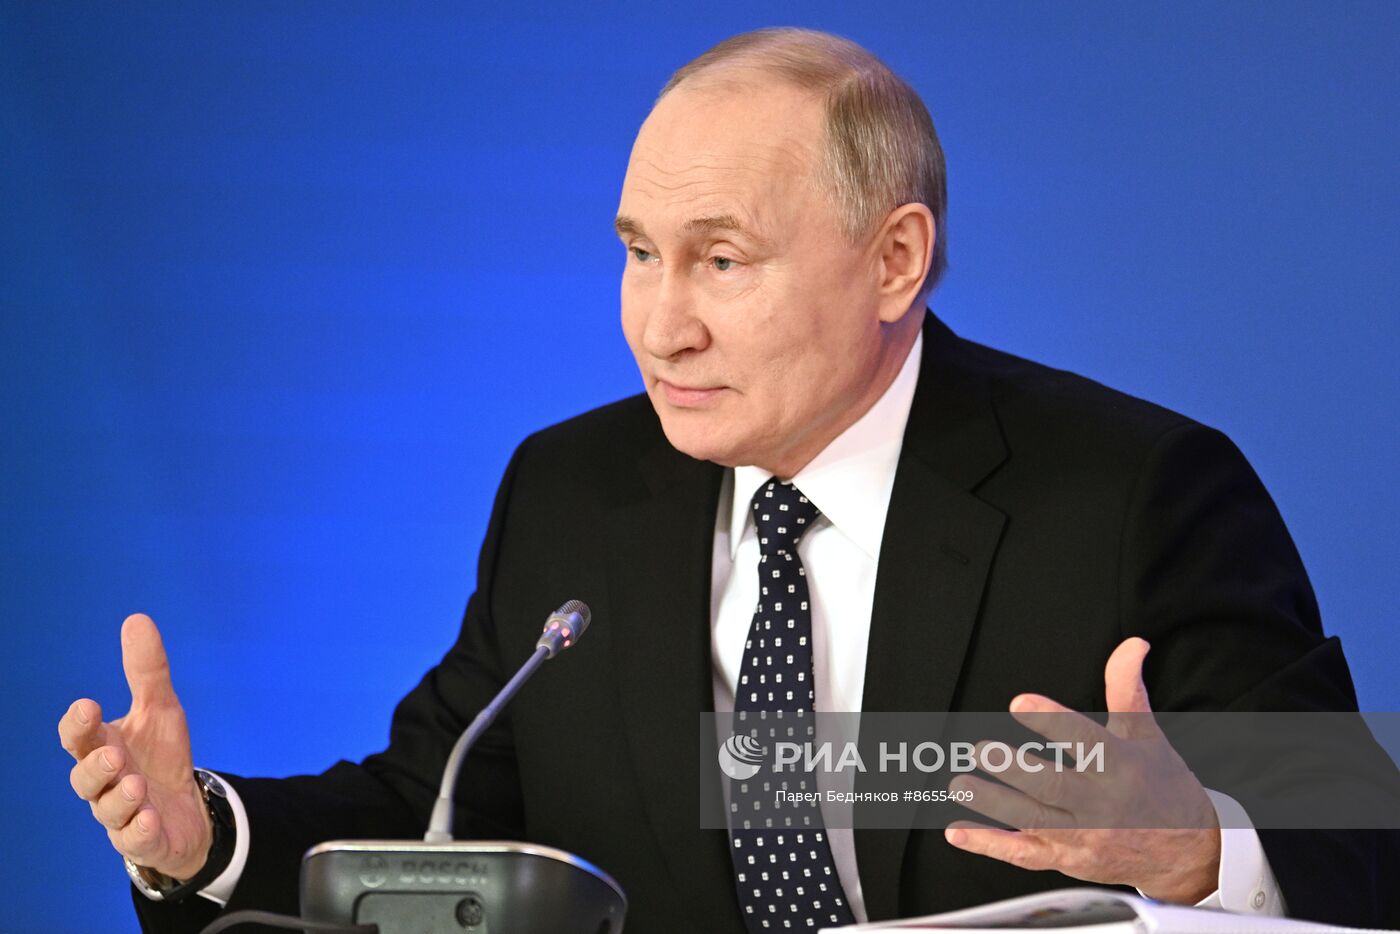 Президент Владимир Путин принял участие в съезде Федерации независимых профсоюзов России